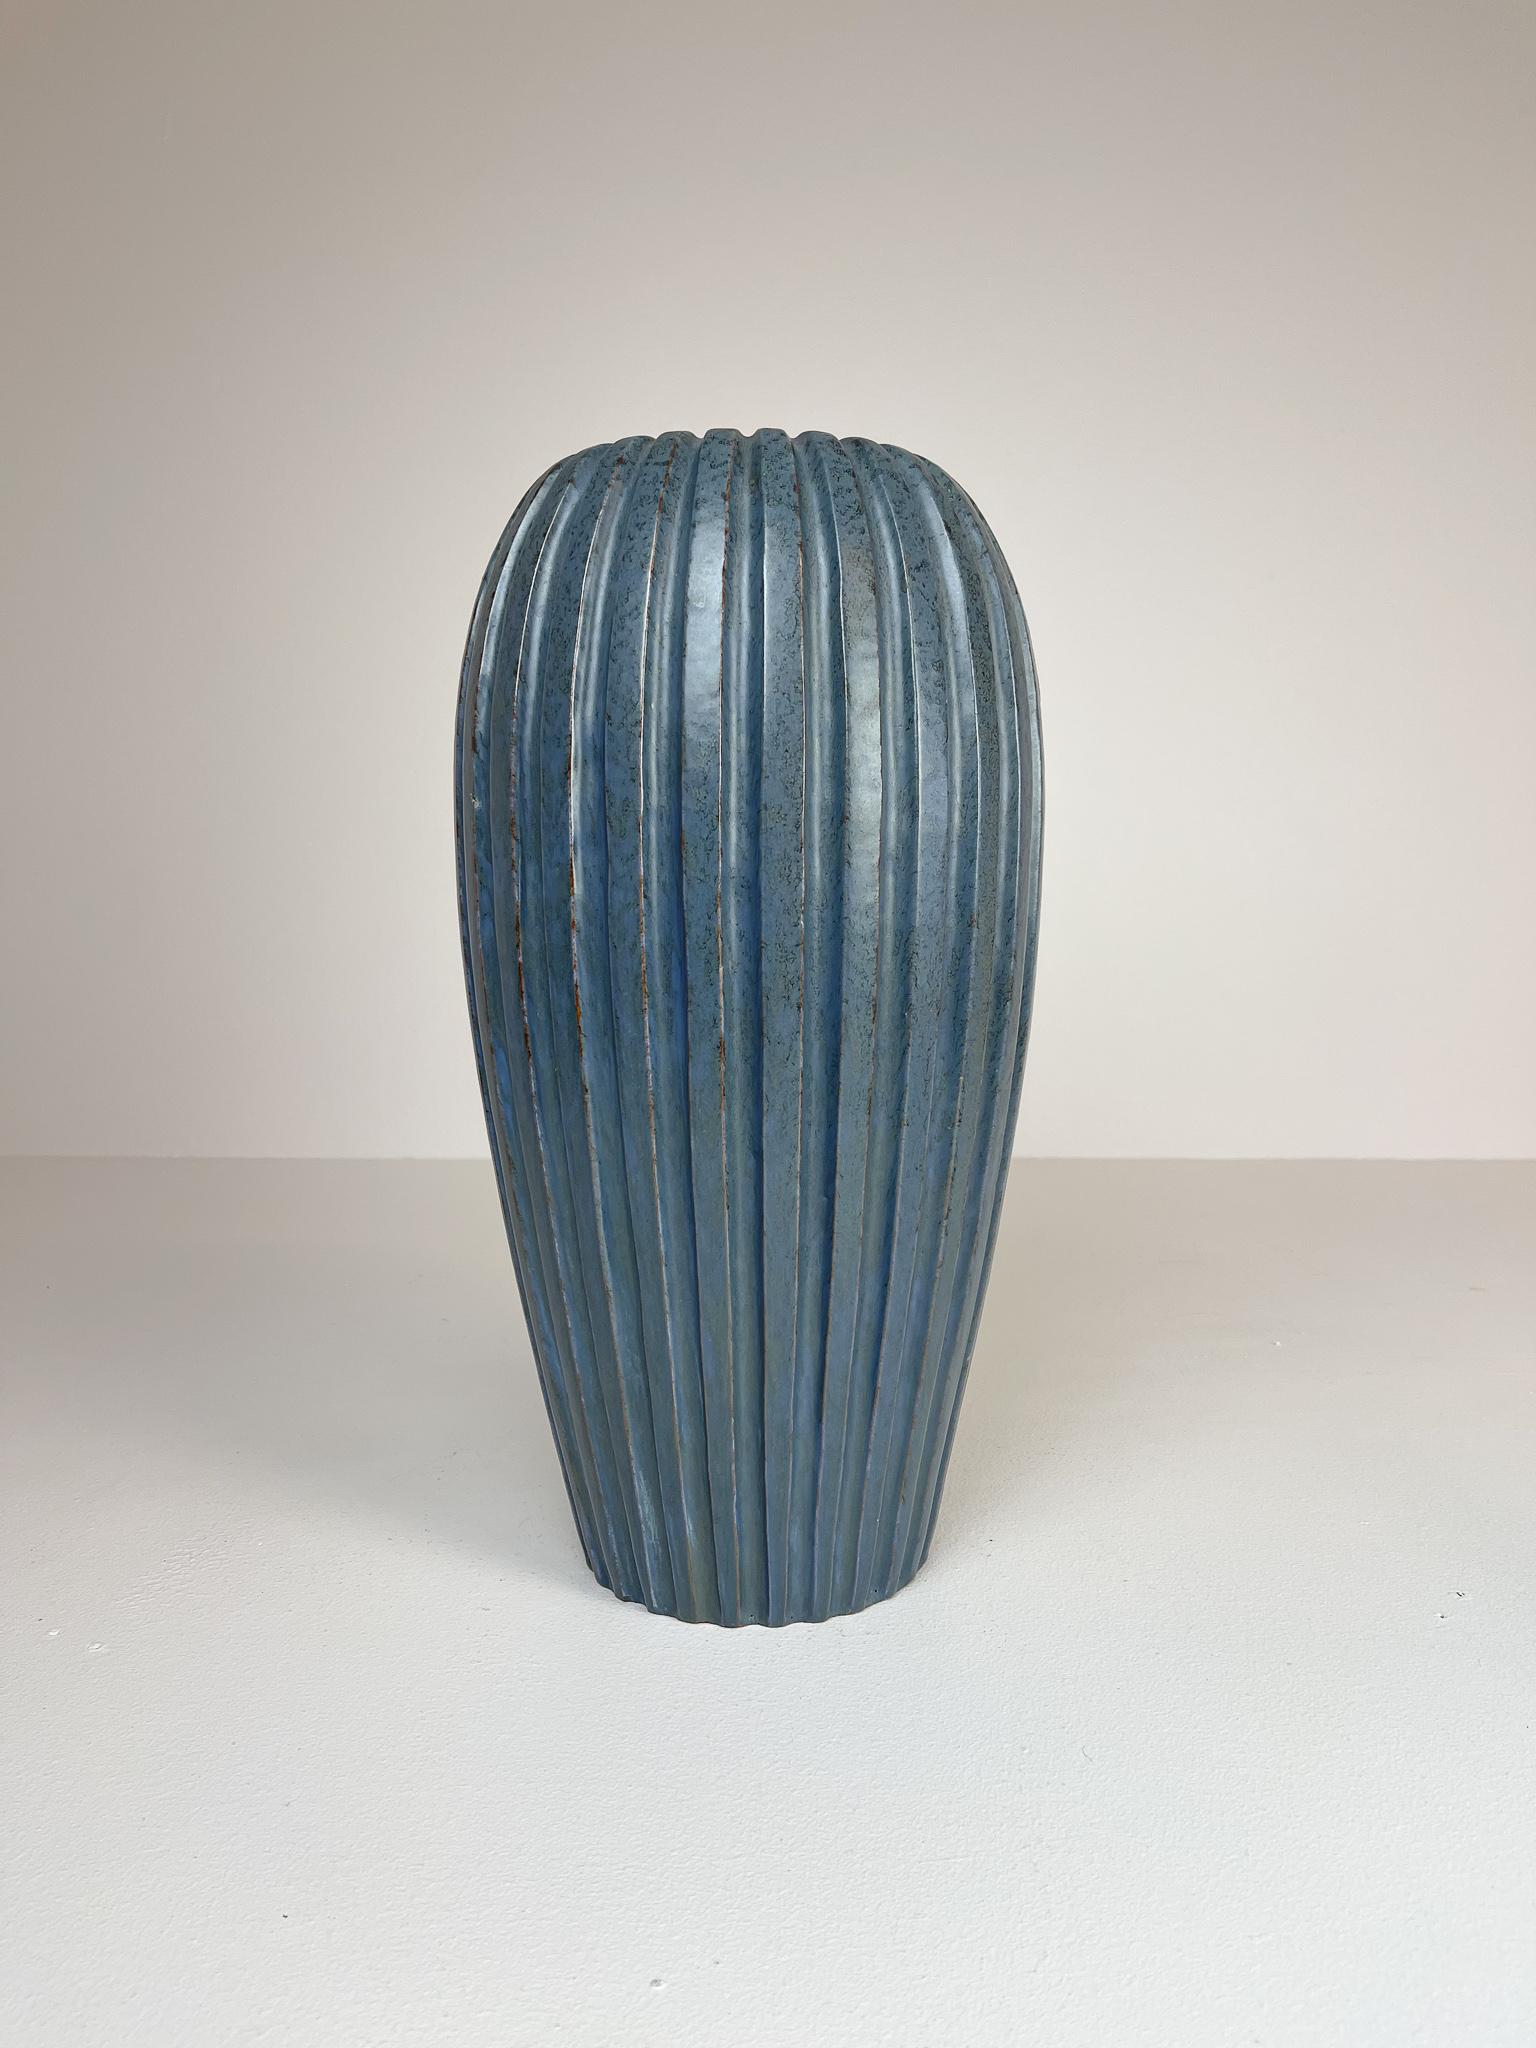 Merveilleux grand vase de sol bleu rare. Produit à Ekeby et conçu par Vicke Lindstand dans les années 1940.
Sa forme épurée la rend parfaitement adaptée à la maison moderne. Trou percé sur le dessus. Cette version bleue du vase n'est pas très